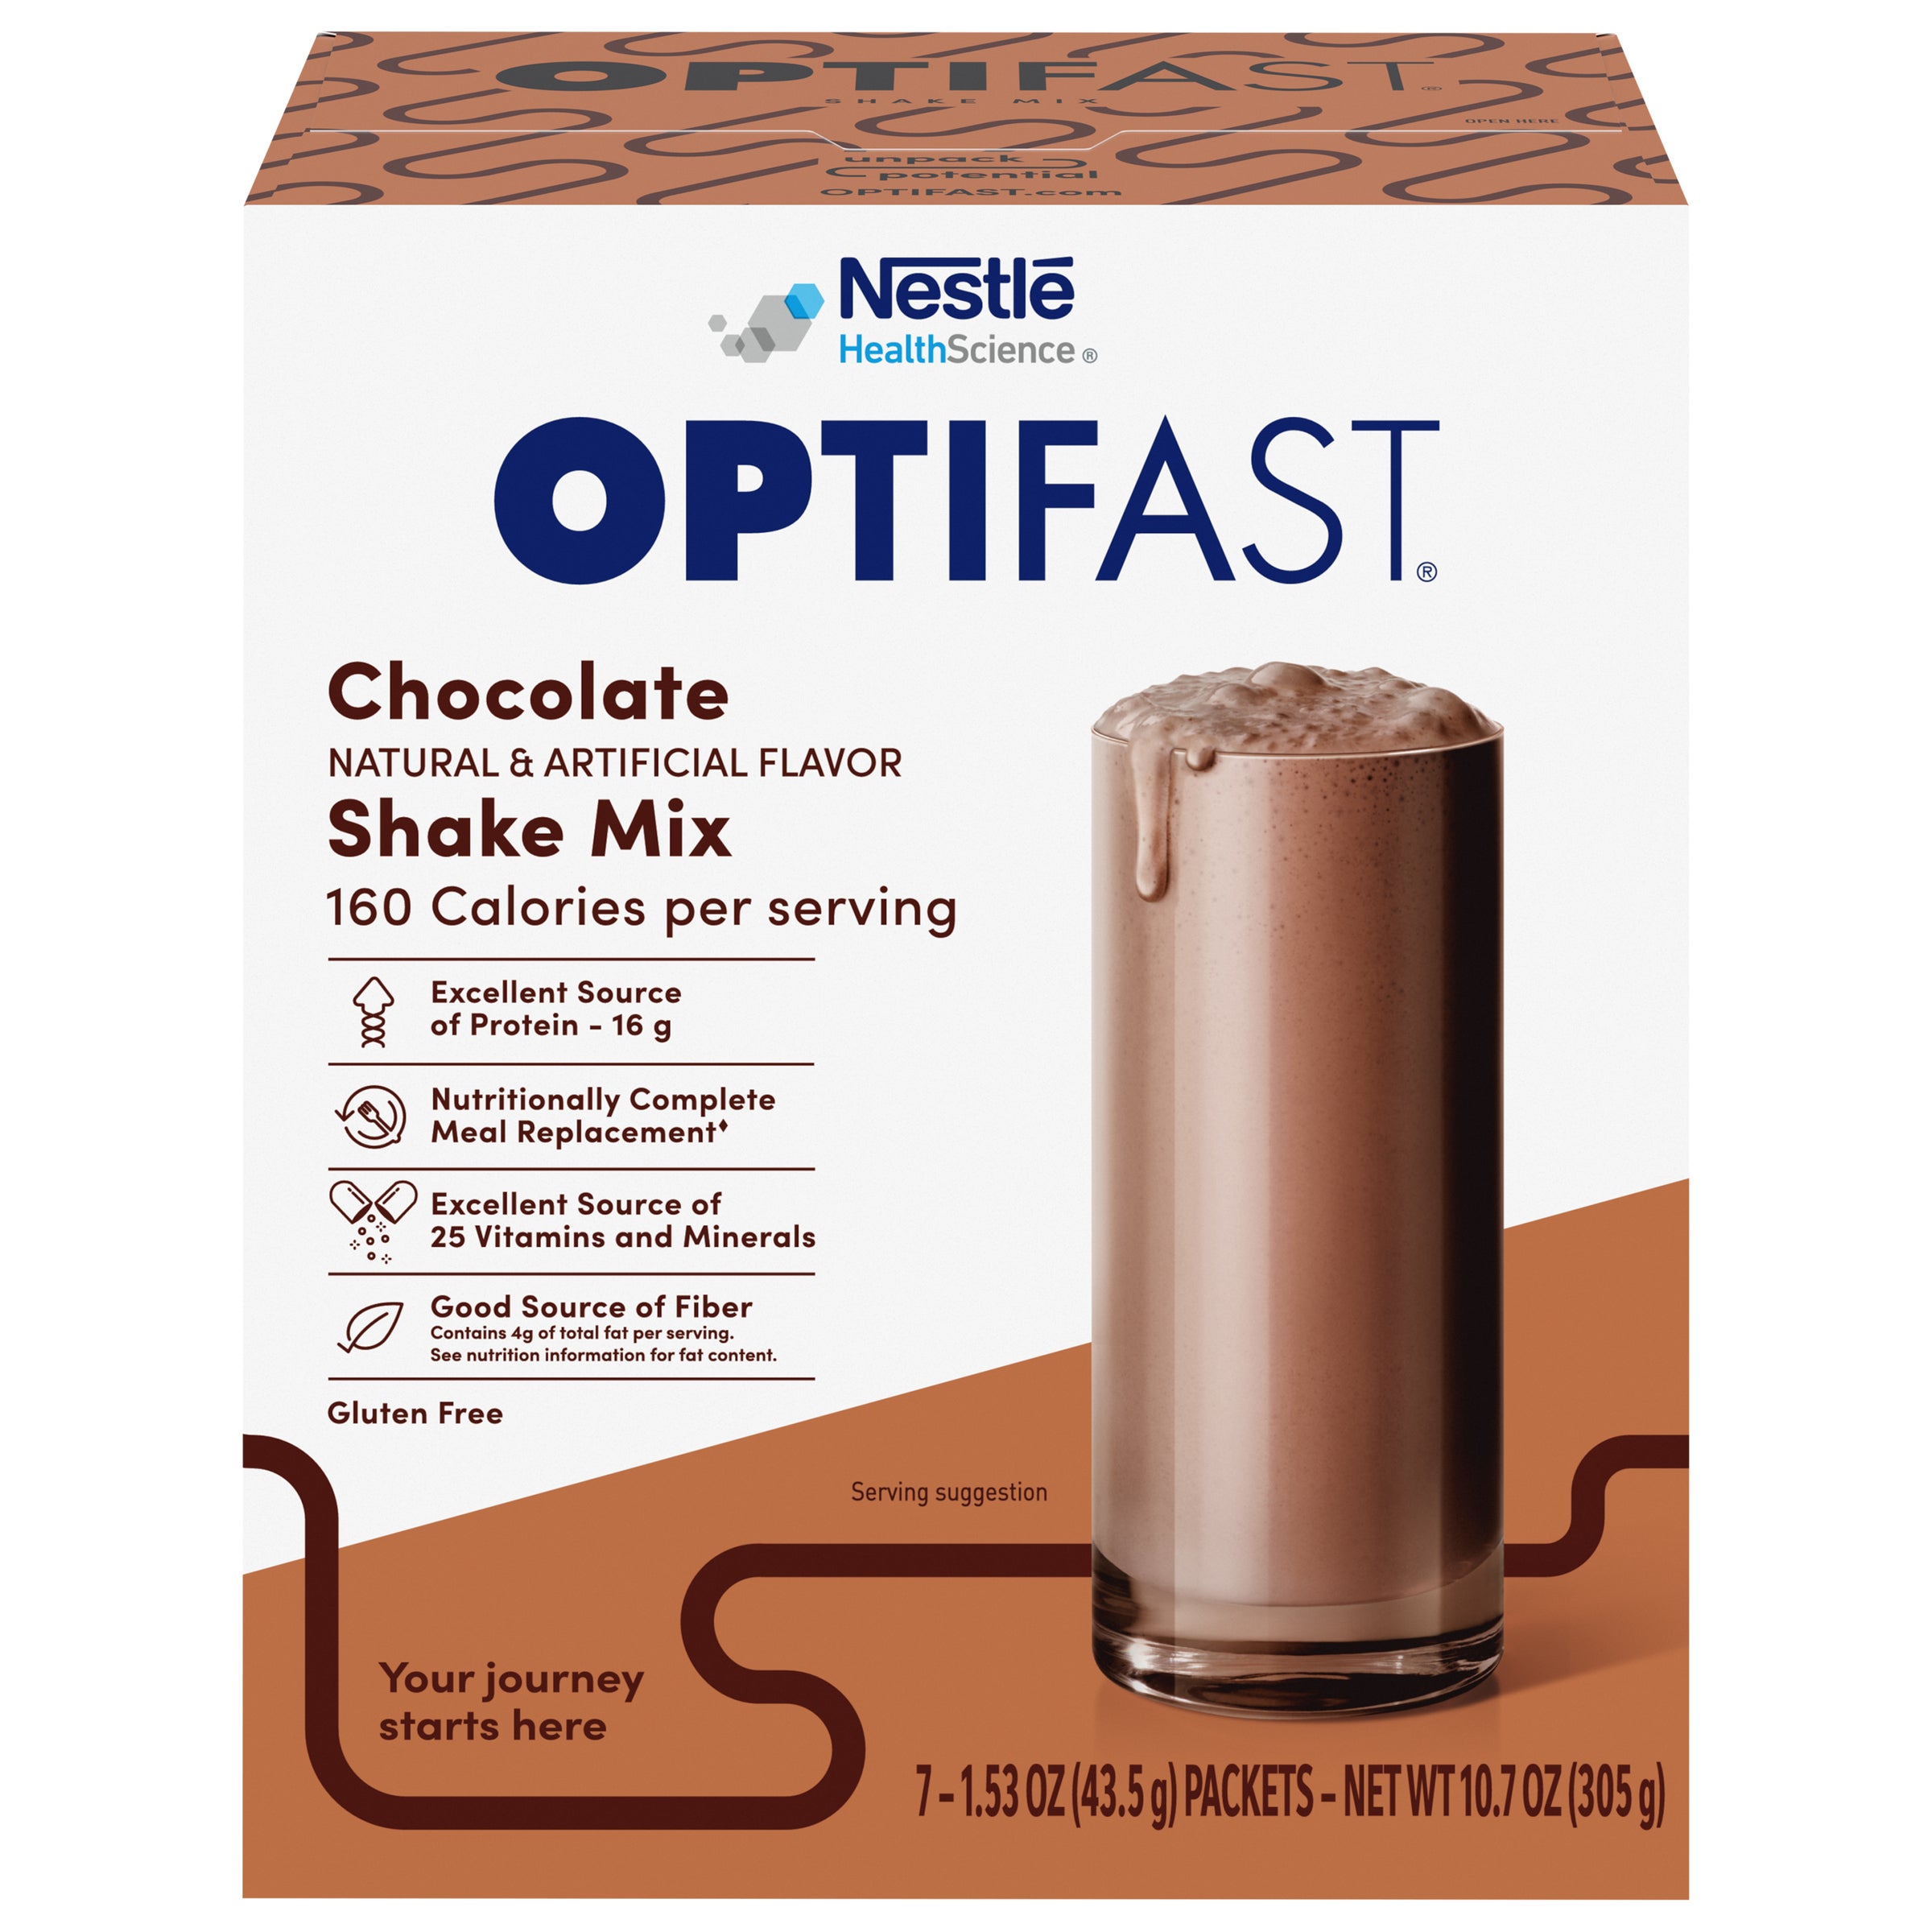 OPTIFAST Chocolate Shake Mix